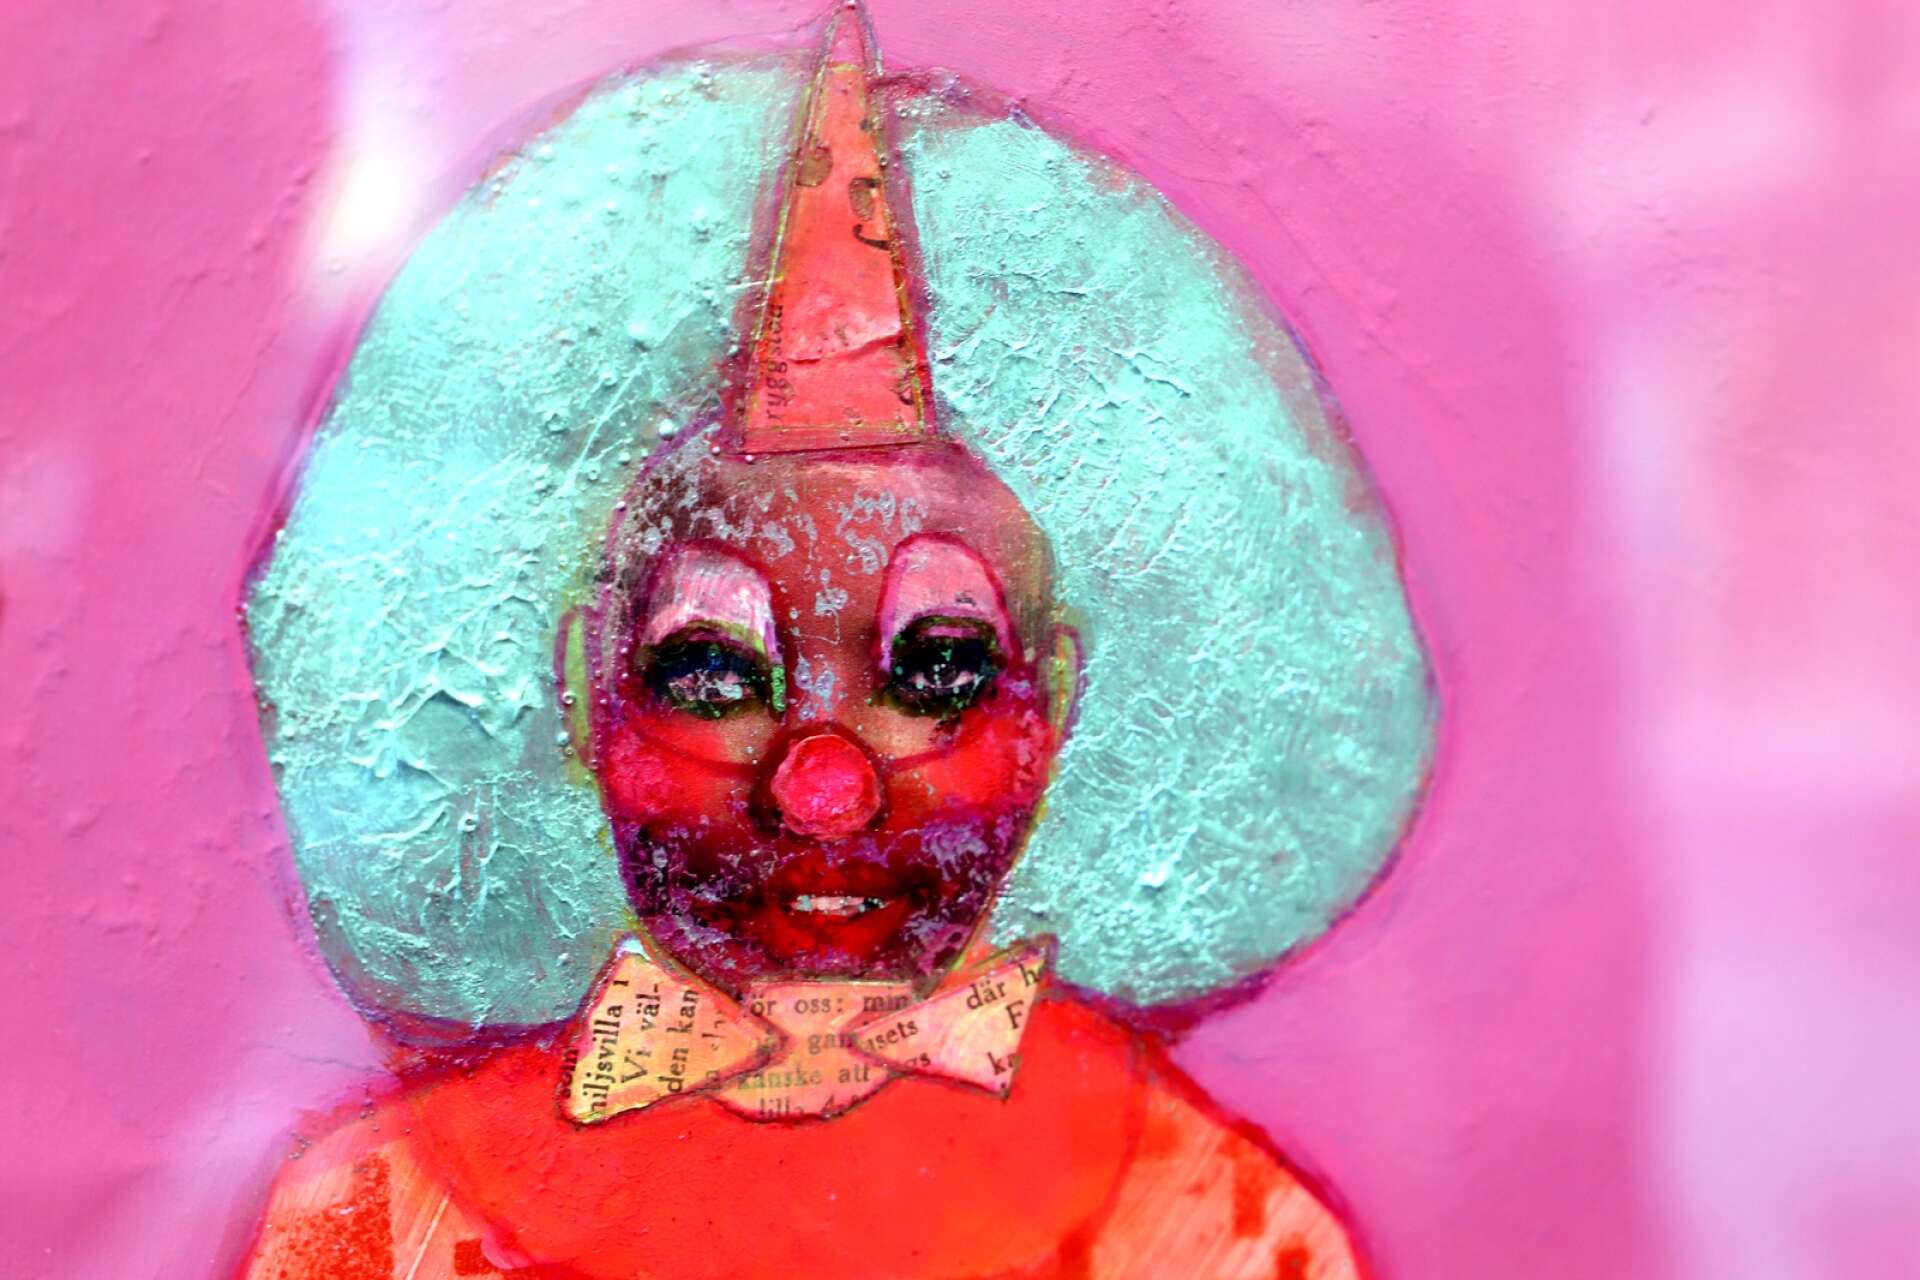 ”Jag tycker mycket om clowner”, säger Sofia Linder, som ofta låter clownerna kliva in i verken.